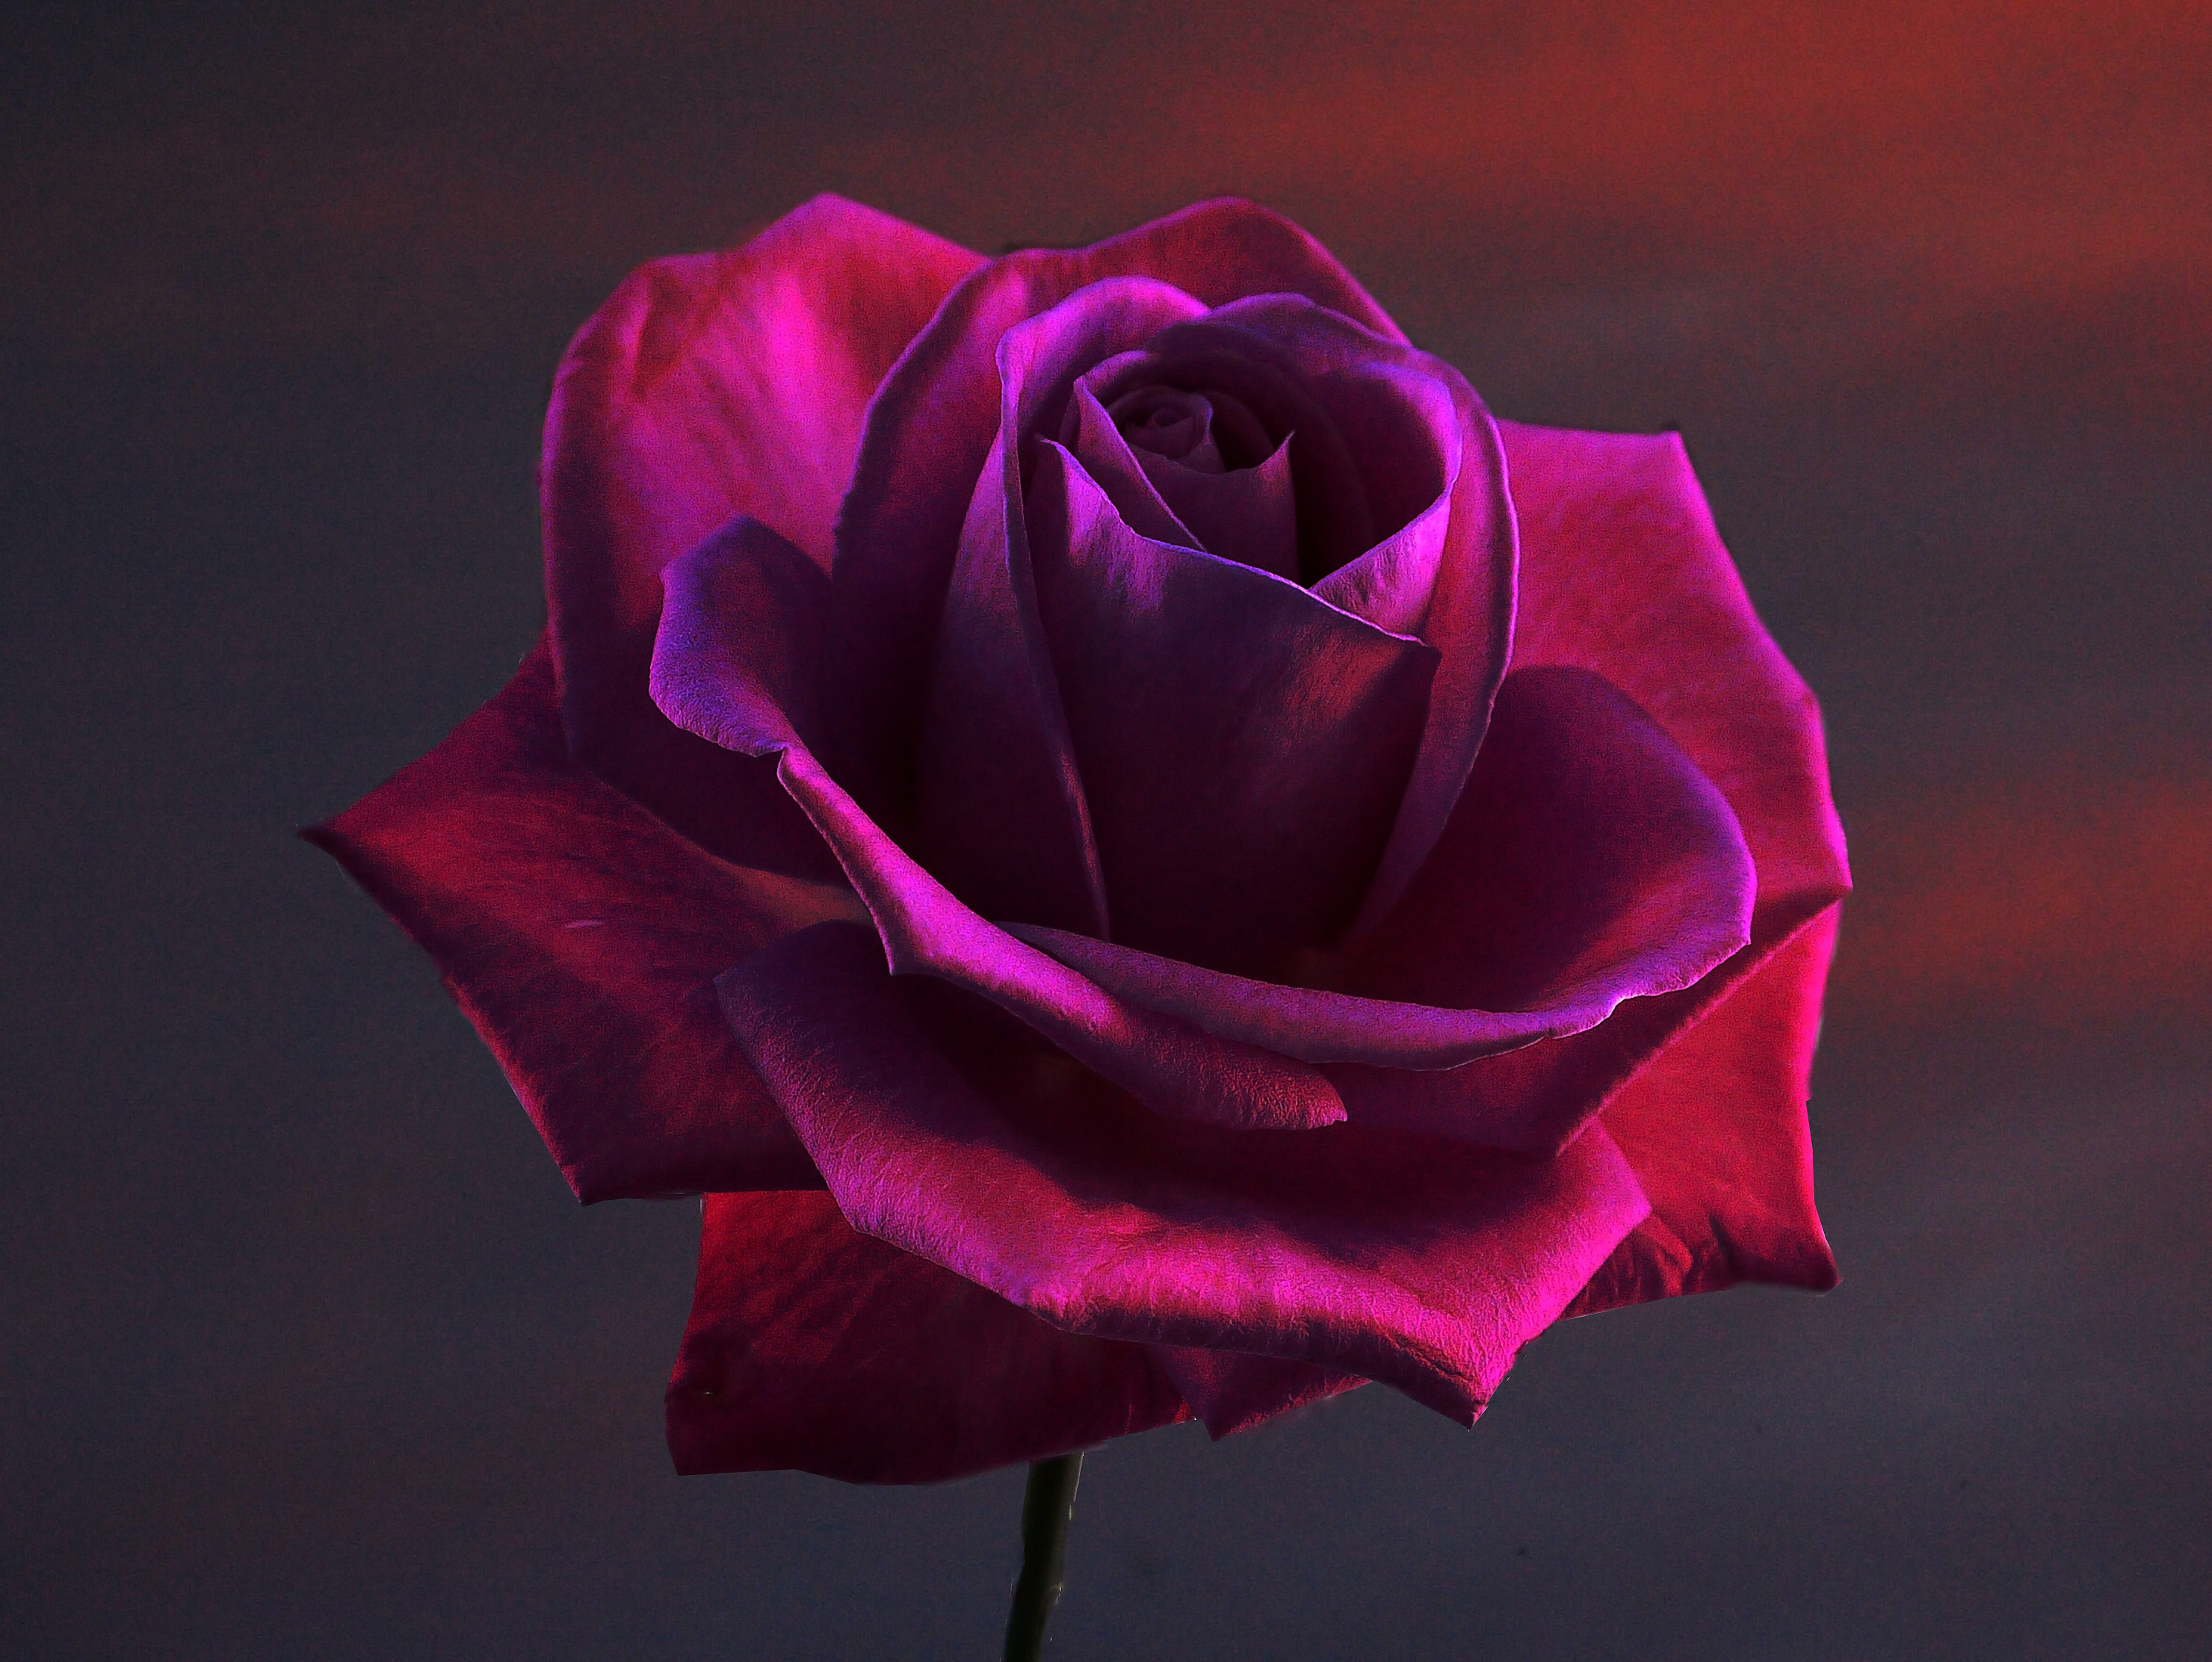 無料写真素材 花 植物 薔薇 バラ画像素材なら 無料 フリー写真素材のフリーフォト